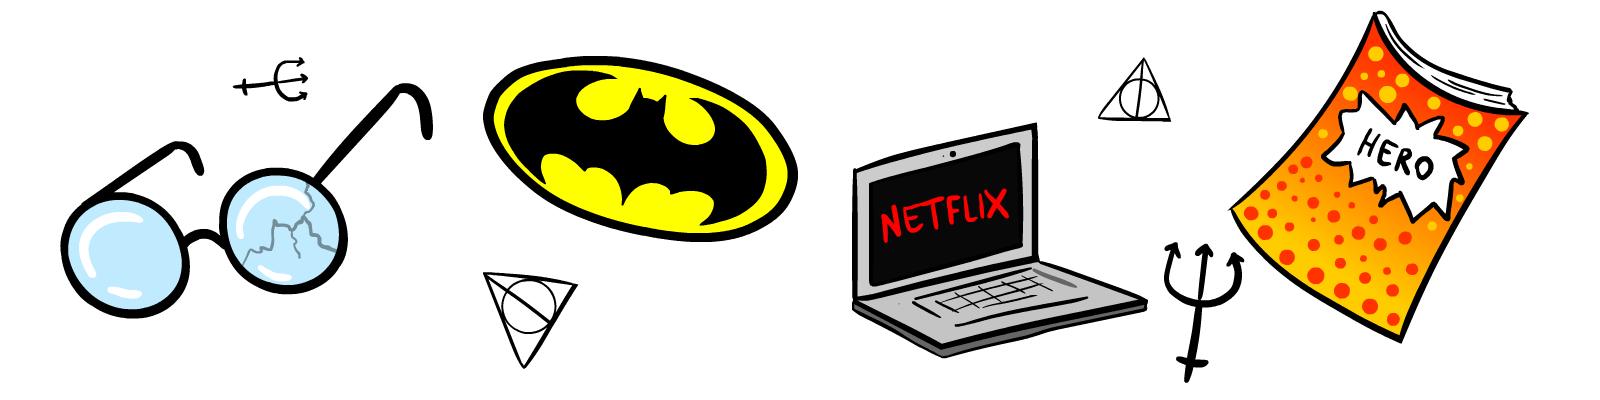 Occhiali di Harry potter, simbolo di Batman, computer con Netflix, fumetti